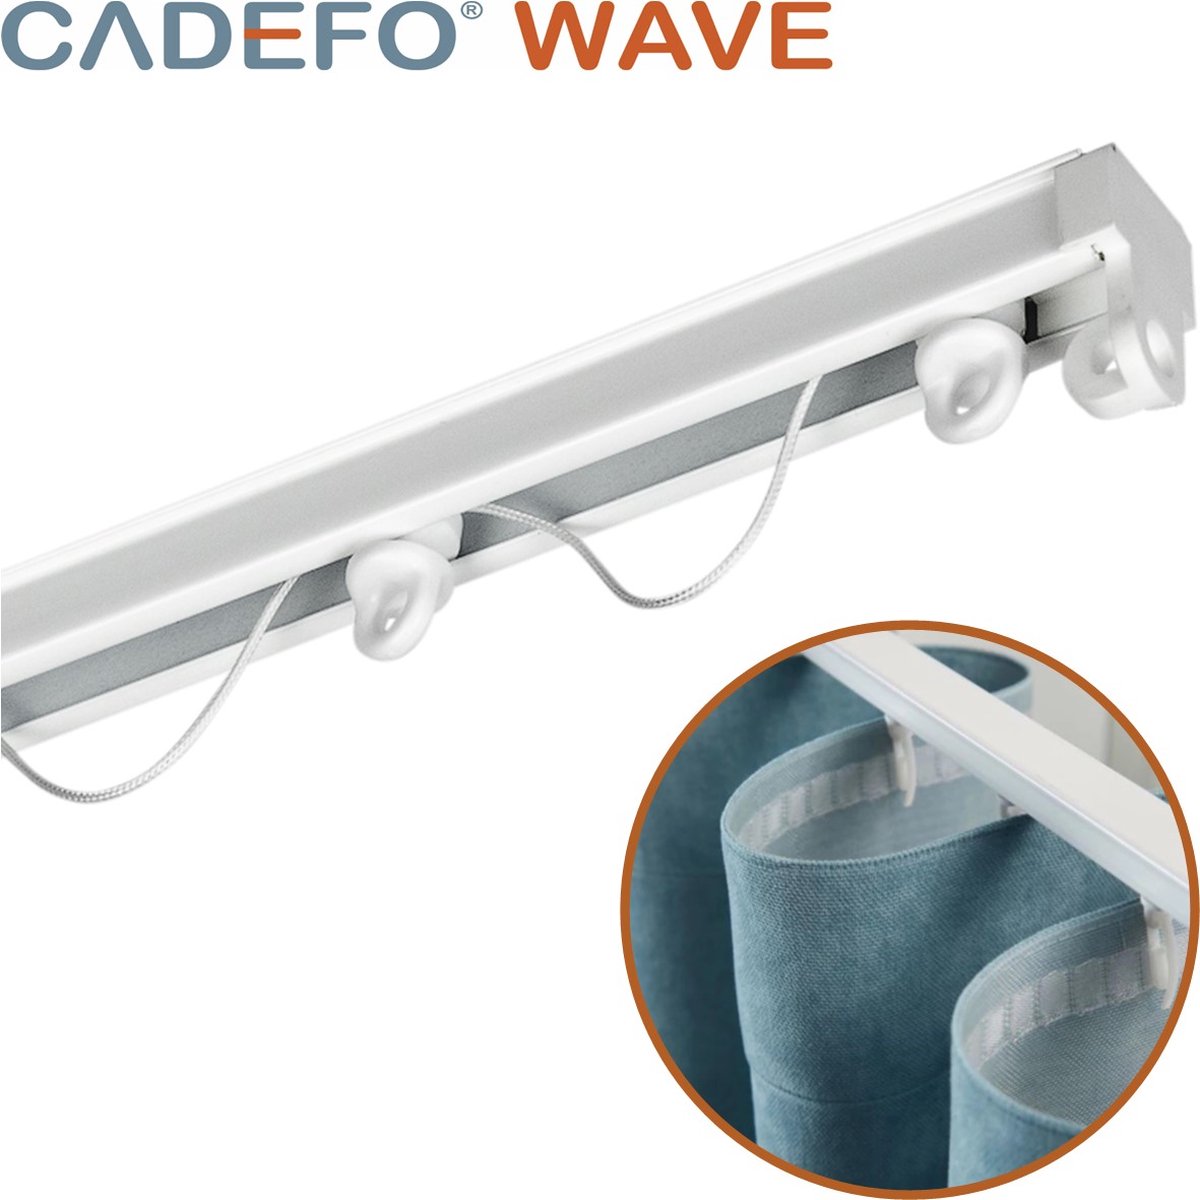 CADEFO WAVE (551 - 600 cm) Gordijnrails - Compleet op maat! - UIT 1 STUK - Leverbaar tot 6 meter - Plafondbevestiging - Lengte 596 cm